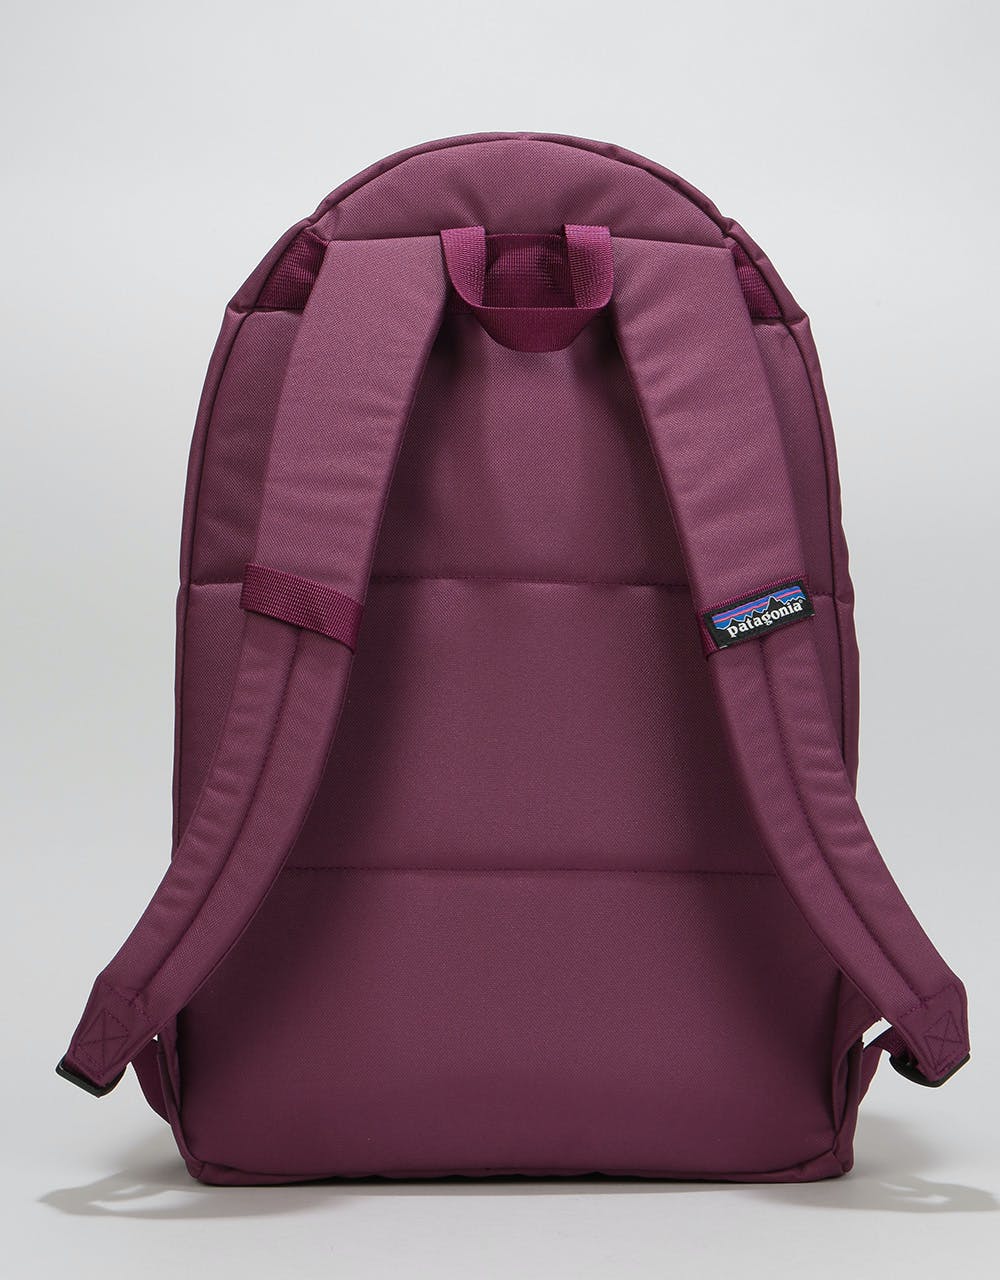 Patagonia Arbor Daypack 20L Backpack - Geode Purple